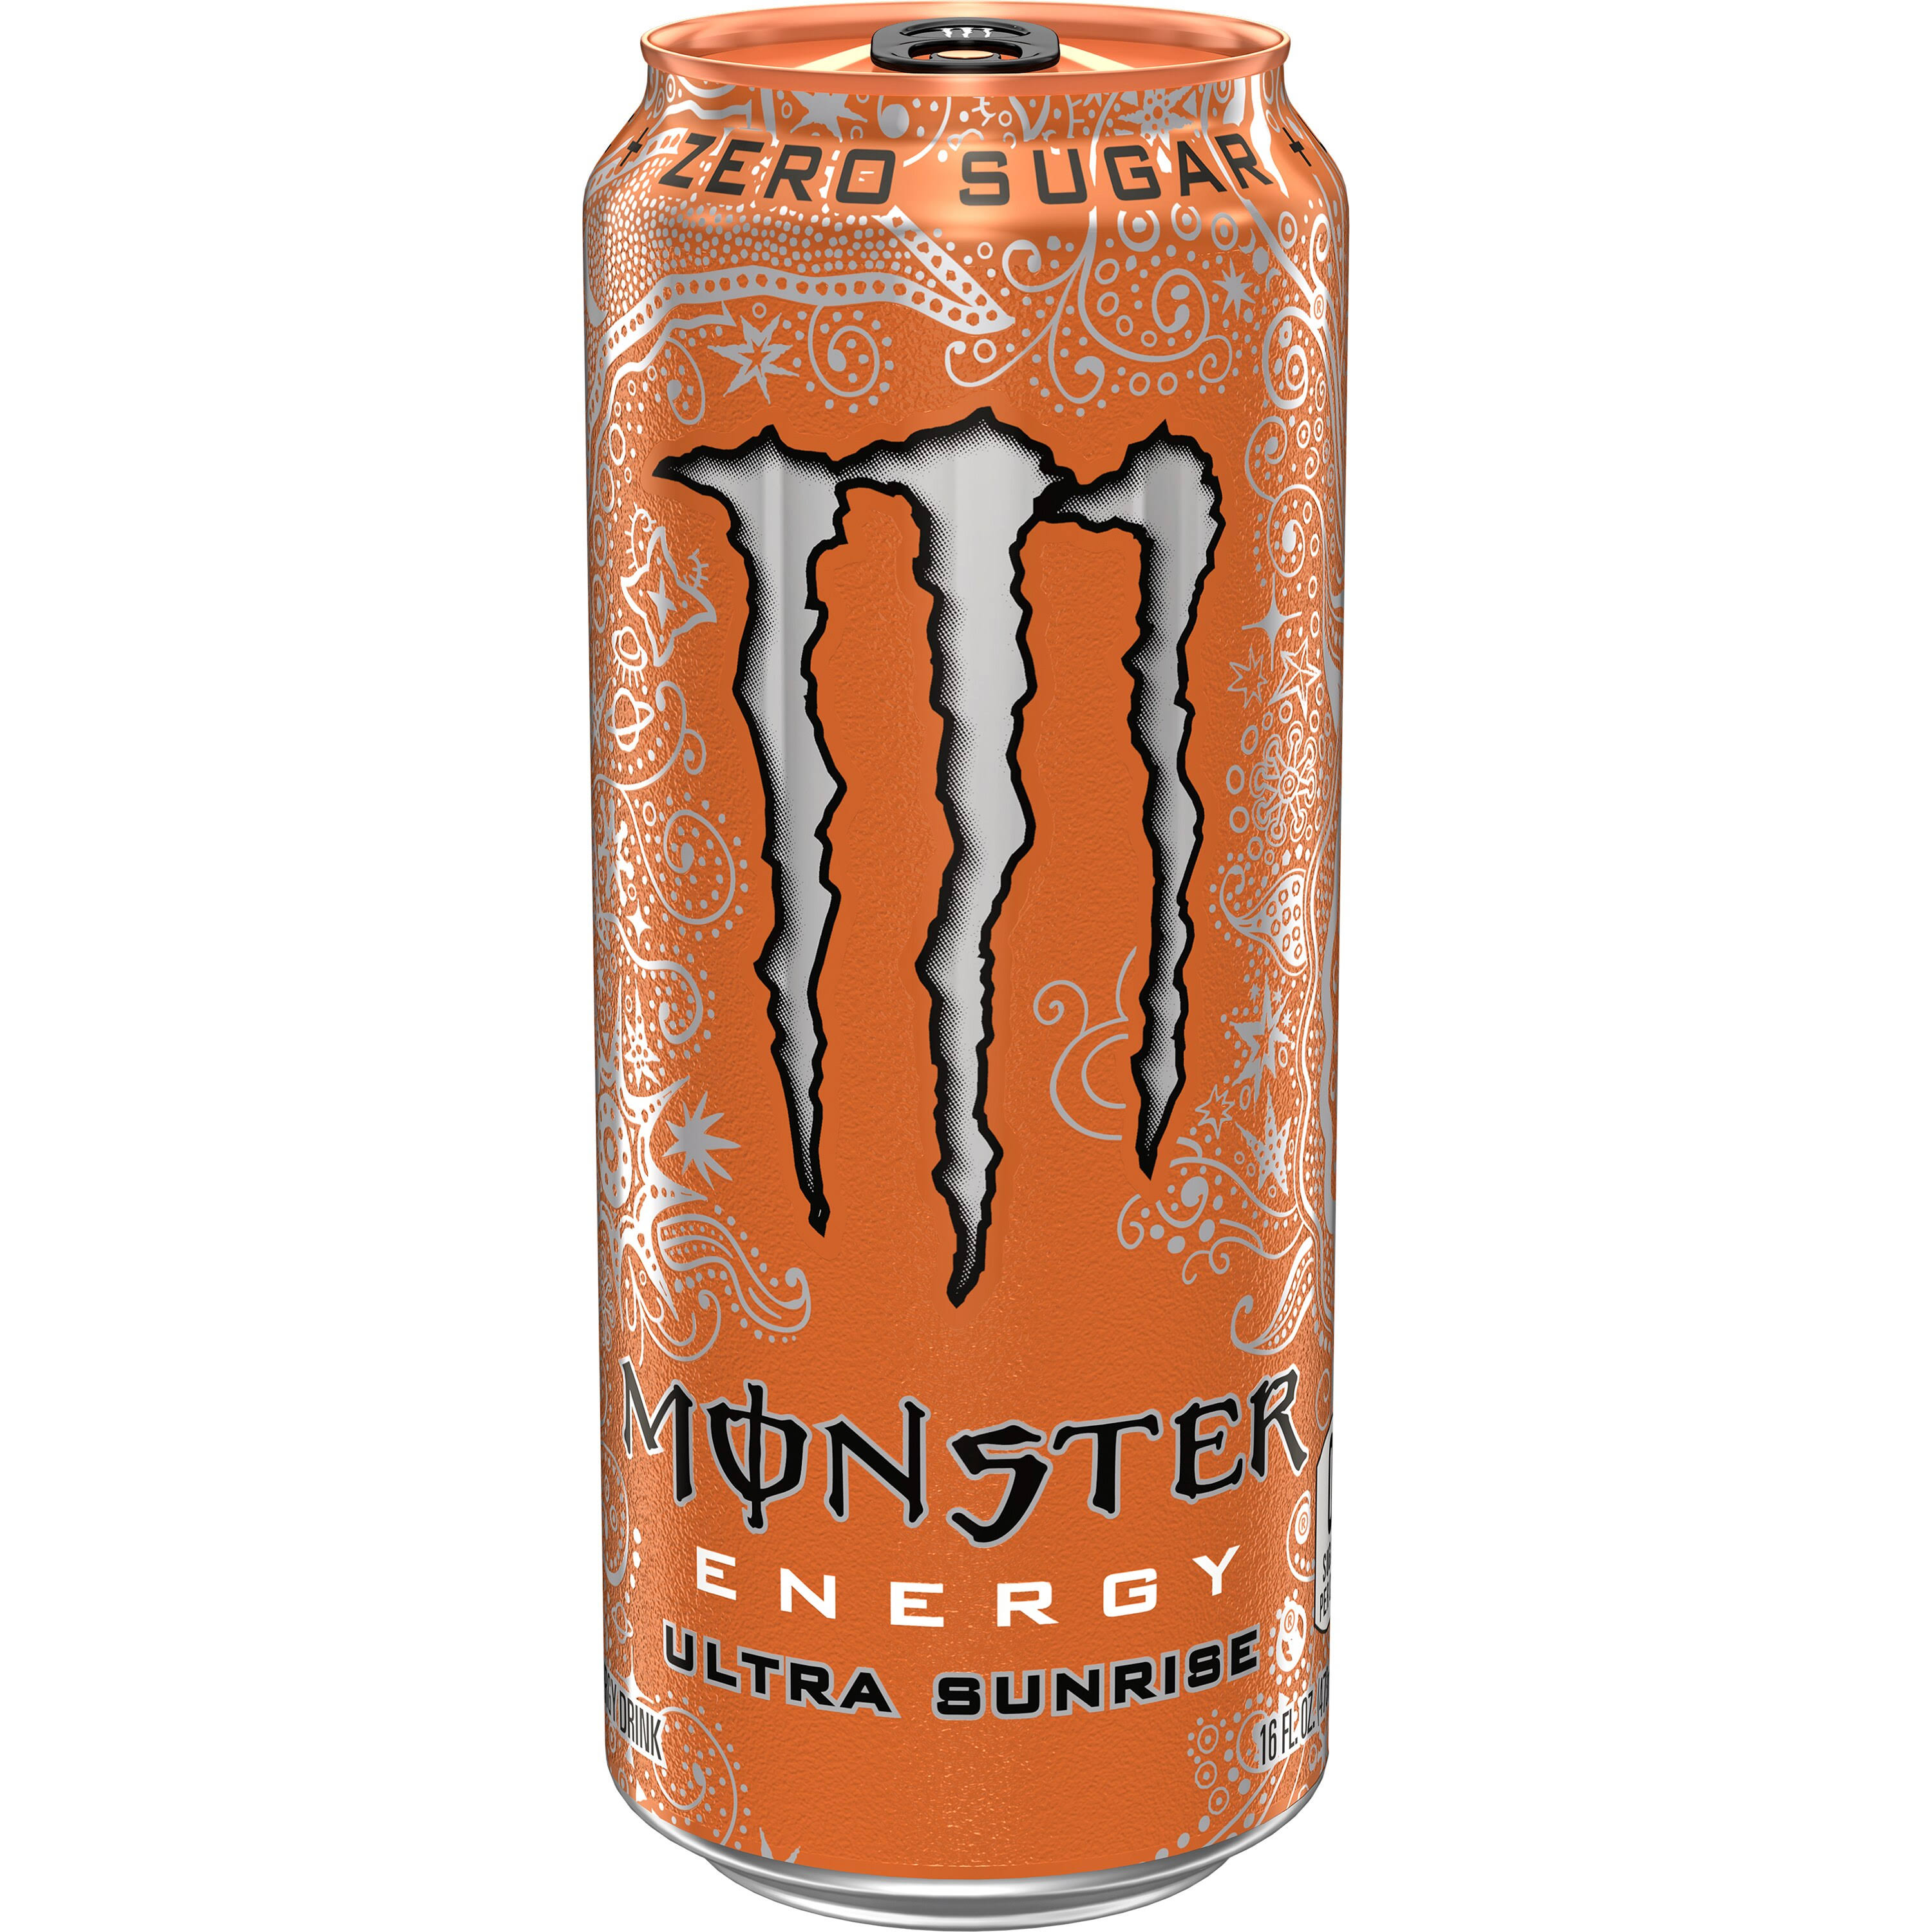 Monster Ultra Sunrise Energy Drink - 16 oz